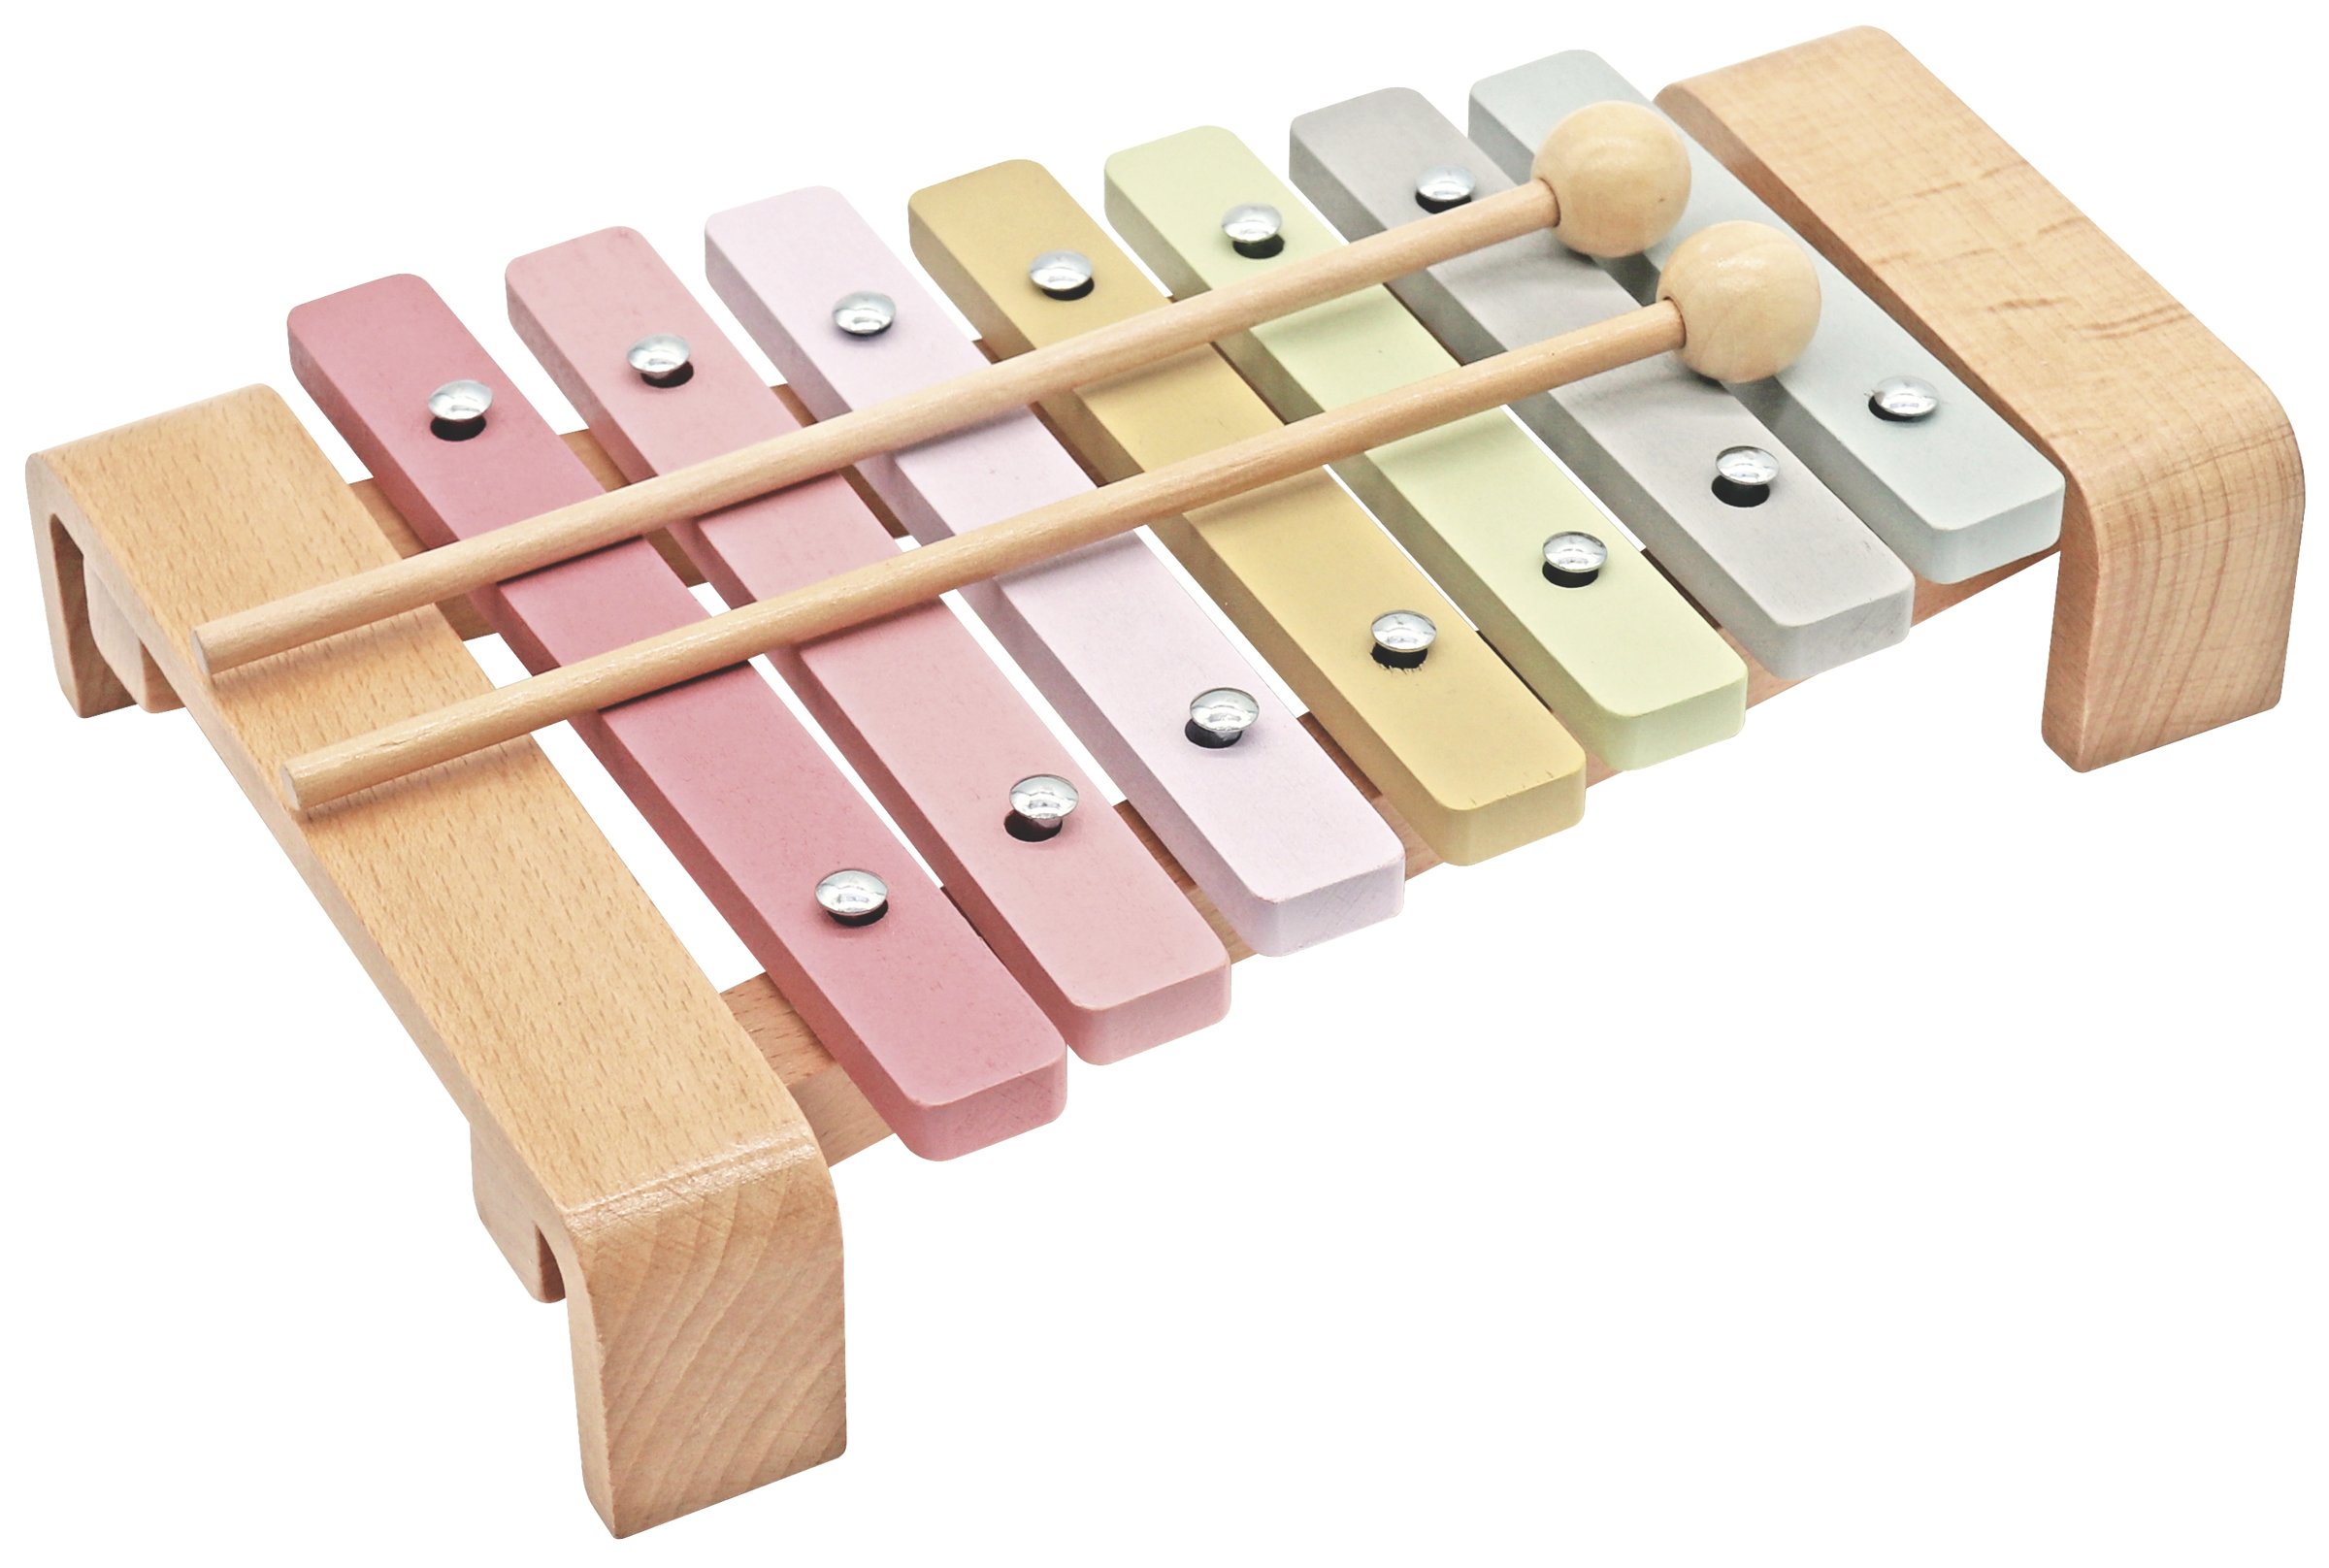 Xylophone - Jouet Montessori - Apprendre la musique chez les enfants